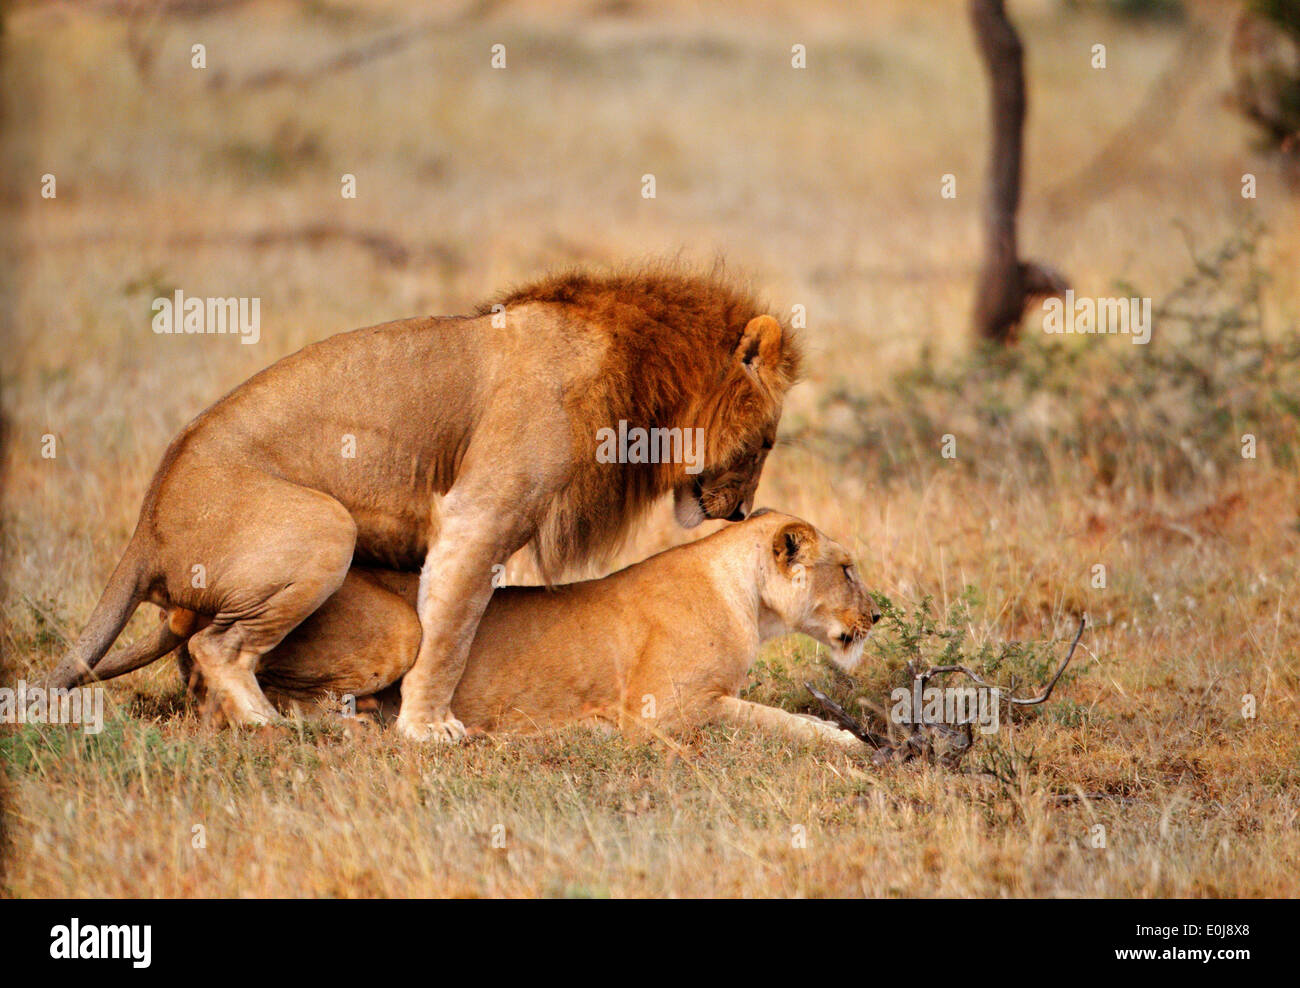 Lion couple mating, Mara Naboisho, Kenya (Panthera leo) Stock Photo